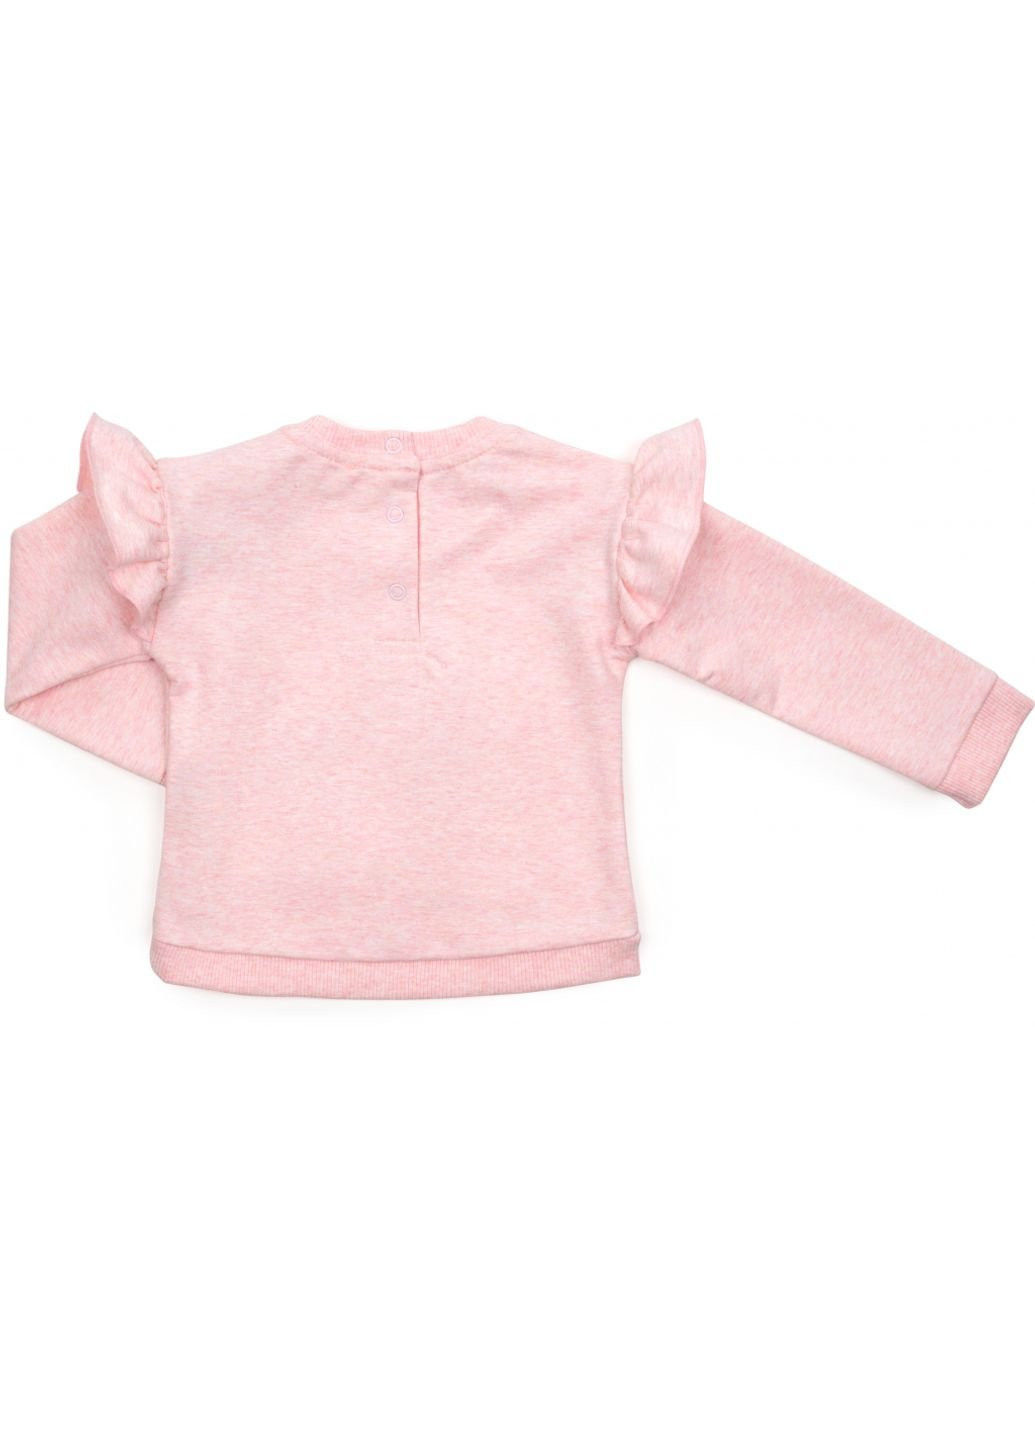 Персиковый демисезонный набор детской одежды с единорогом (16060-92g-peach) Breeze